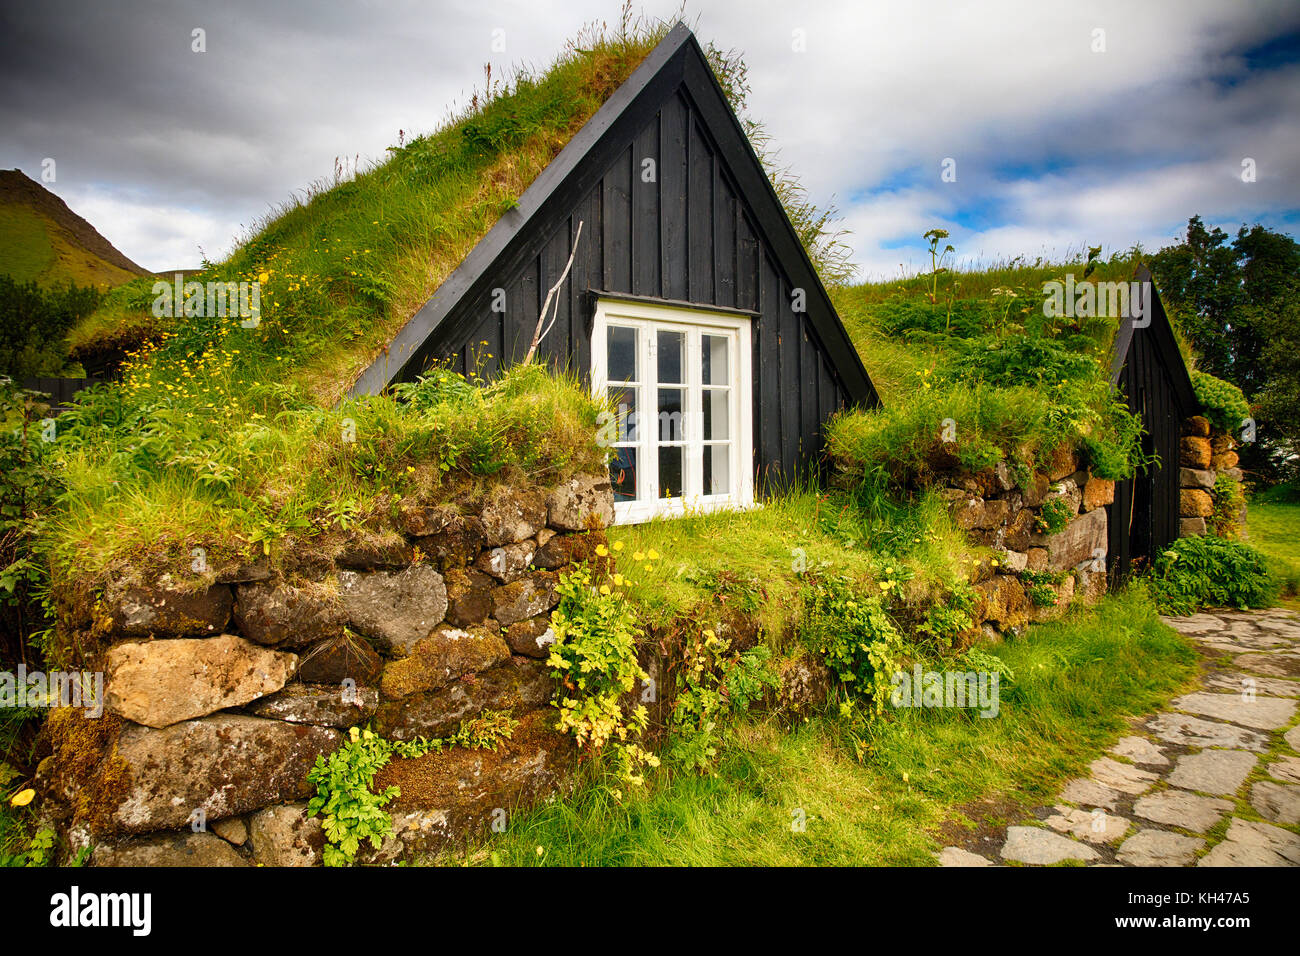 IcelandicTurfhouse pendant l'été, Musée Skogar Folks, Islande Banque D'Images